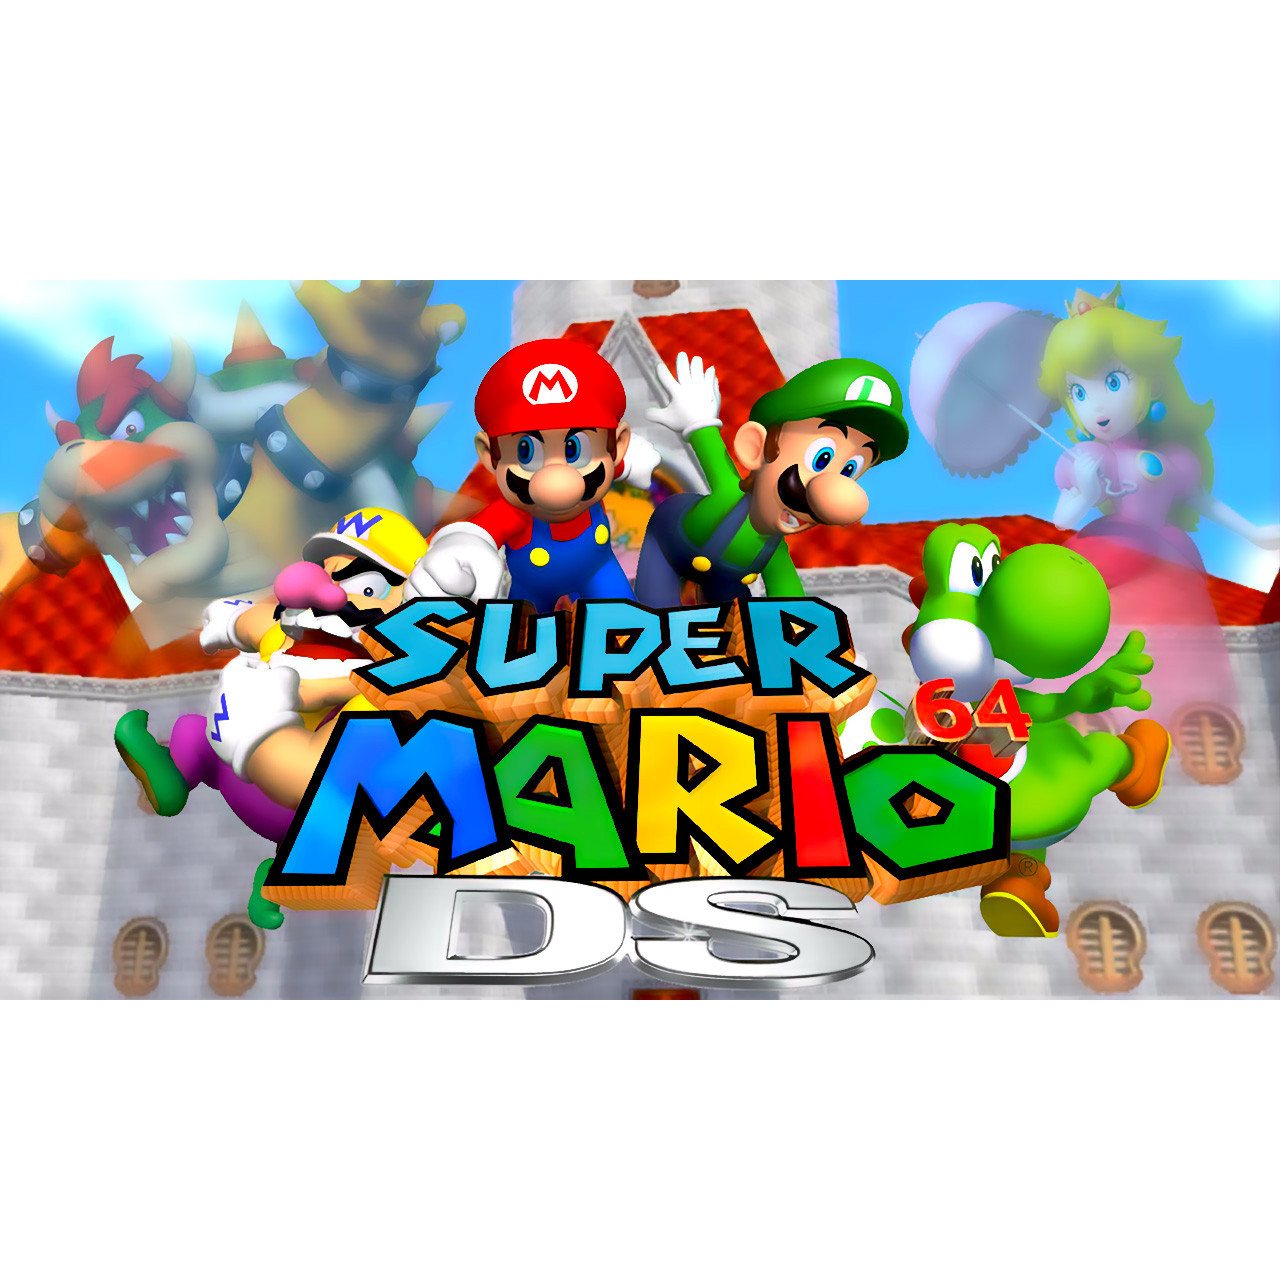 Super Mario 64 DS Nintendo DS Game